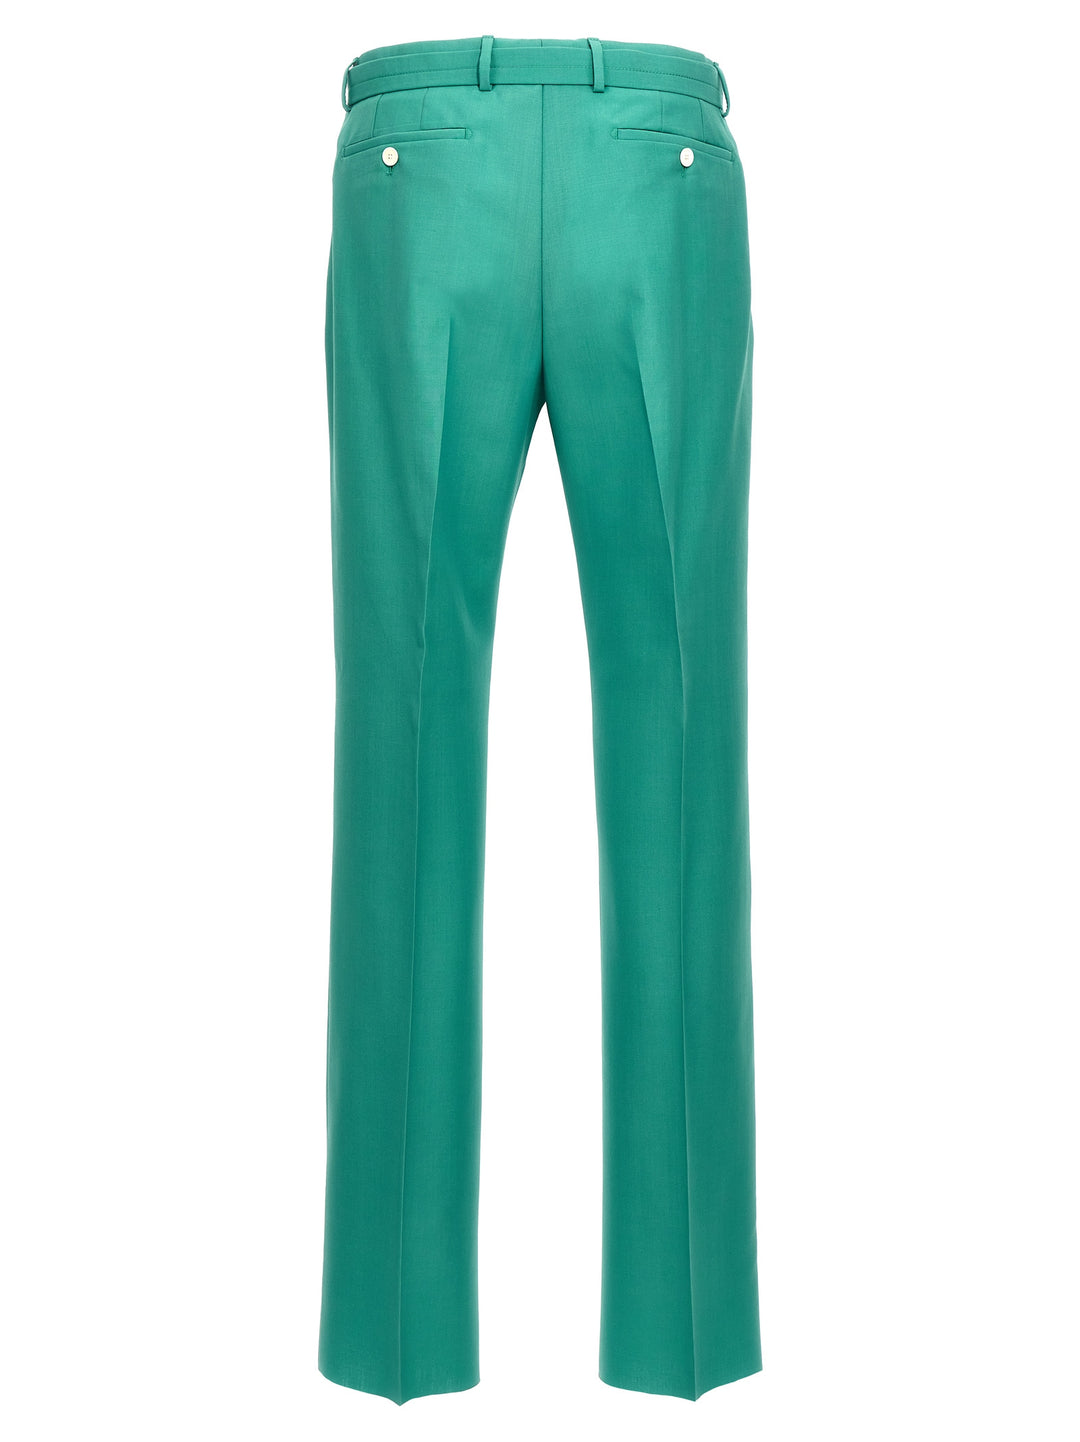 Belted Pantaloni Verde